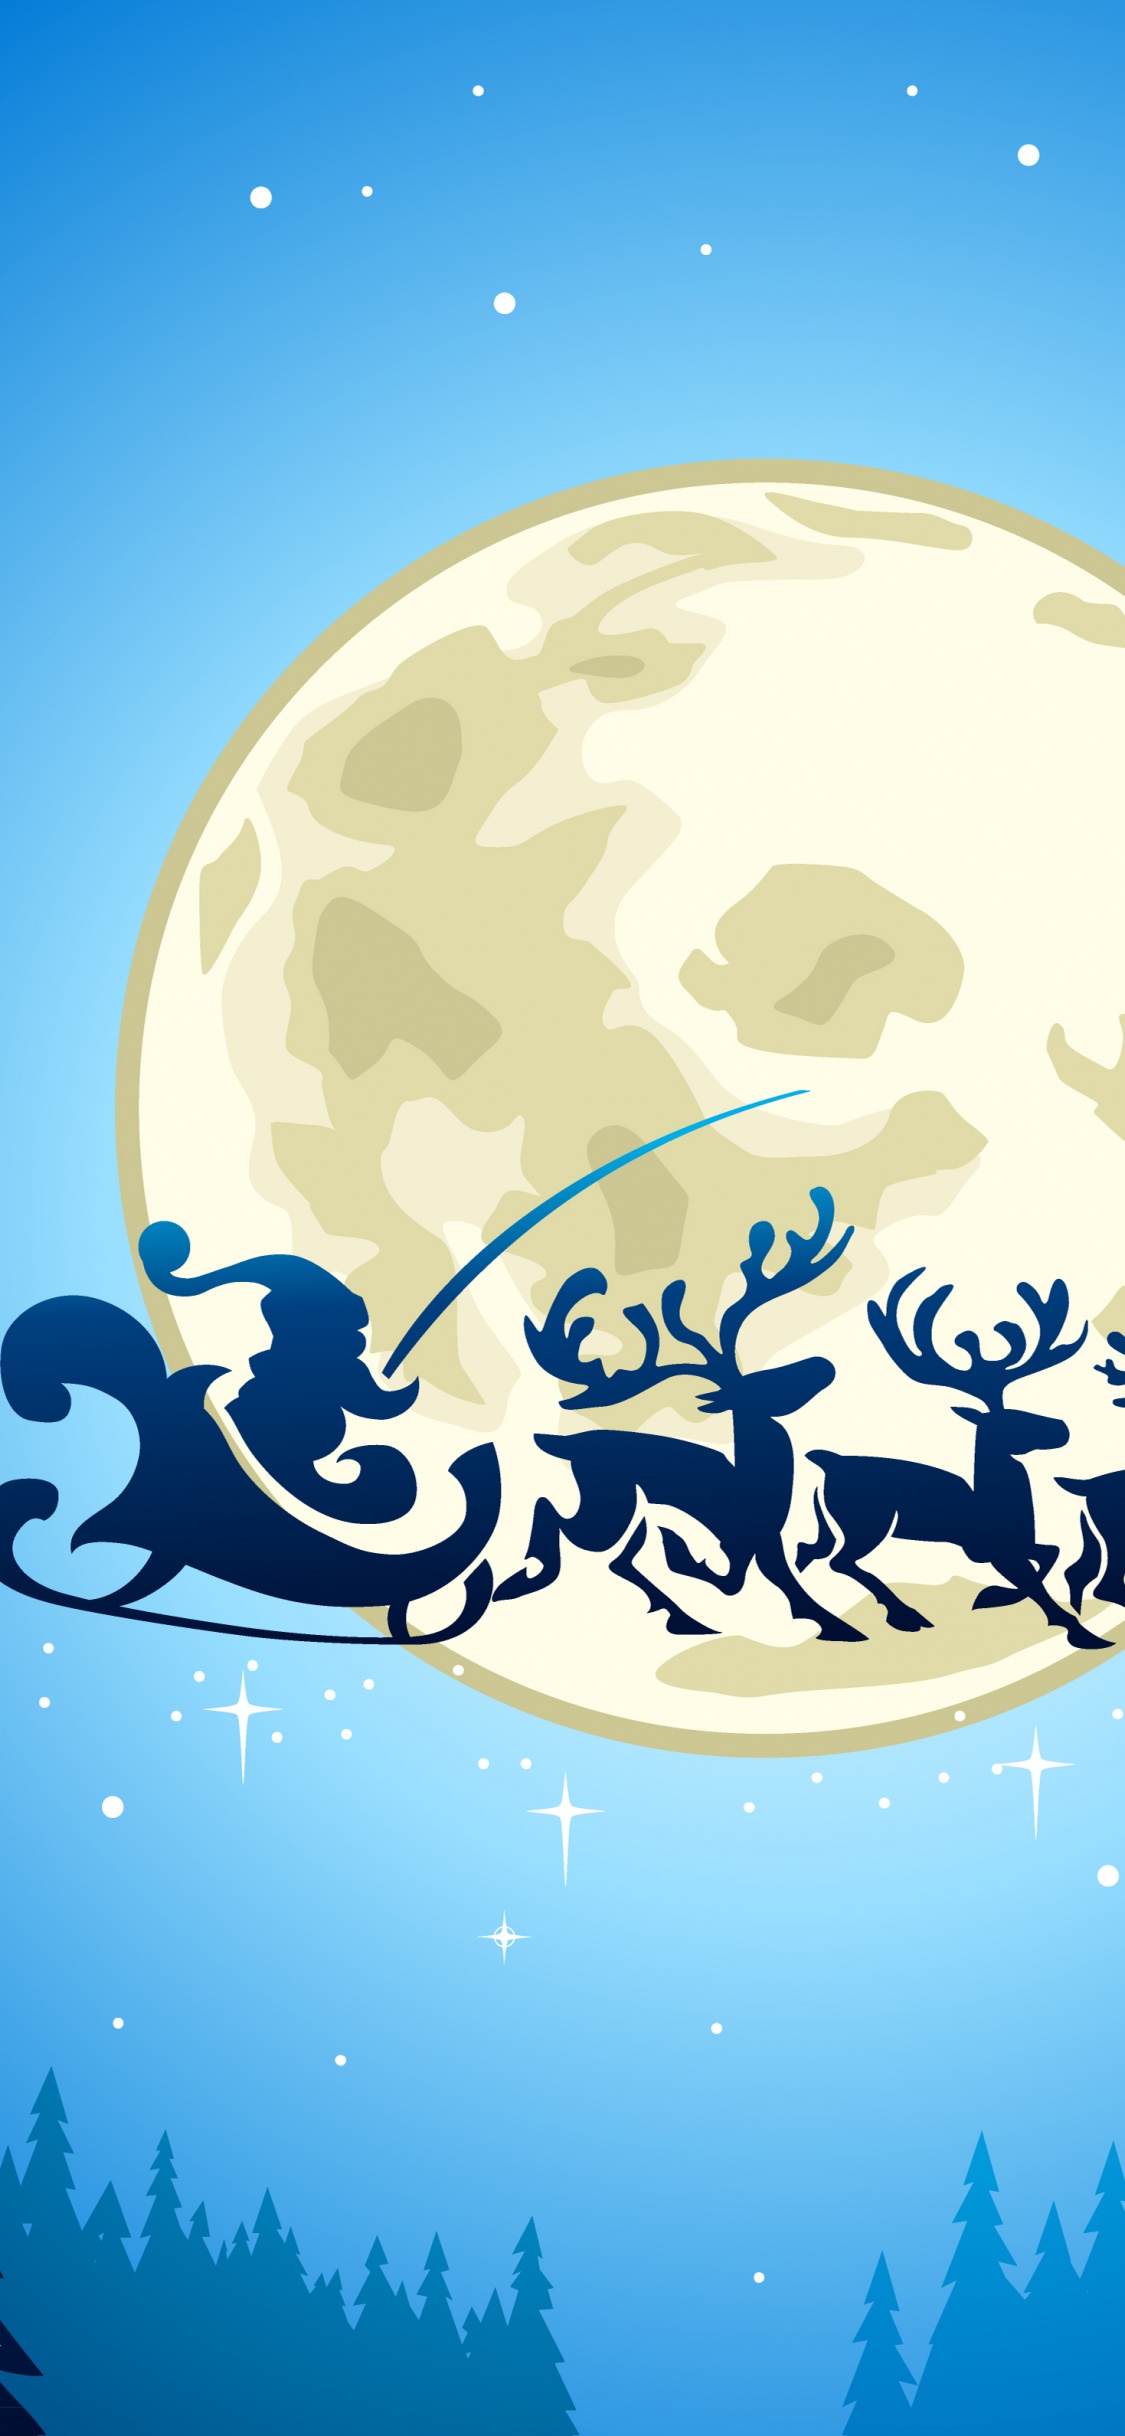 Le Jour De Noël, Santa Claus, Illustration, Ded Moroz, Blue. Wallpaper in 1125x2436 Resolution